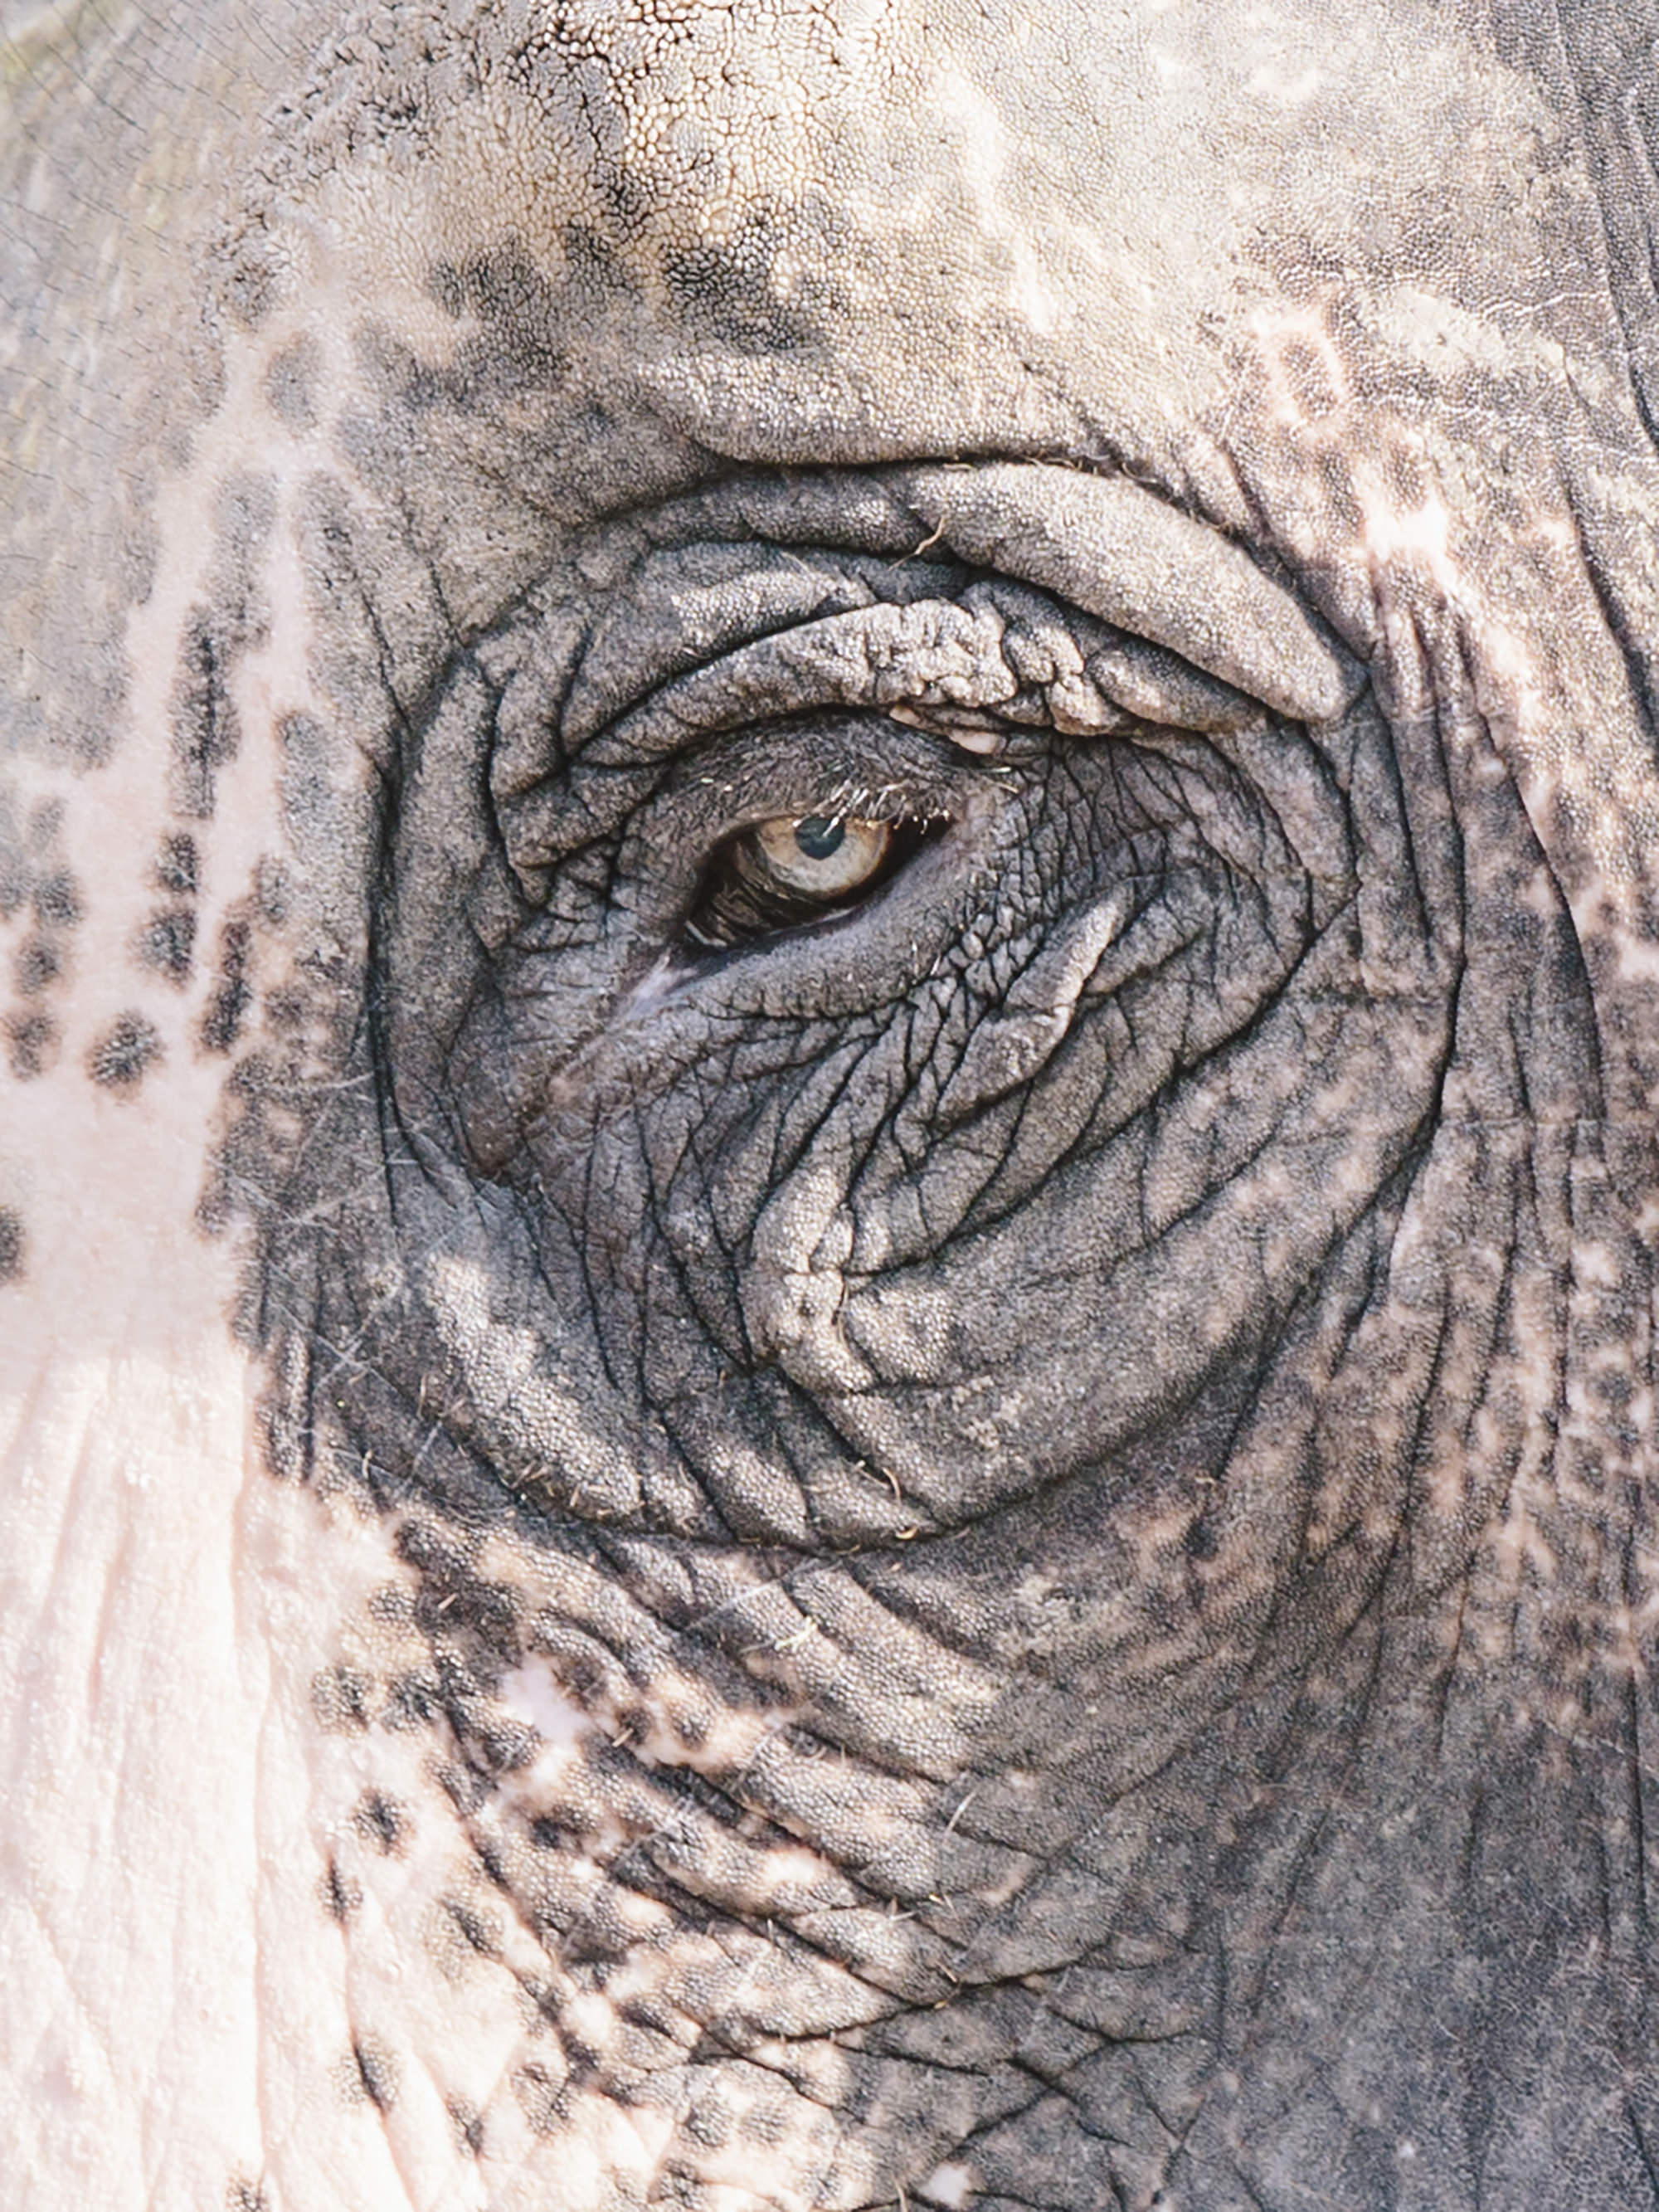 Indian Elephant. Jaipur, India. 2017.